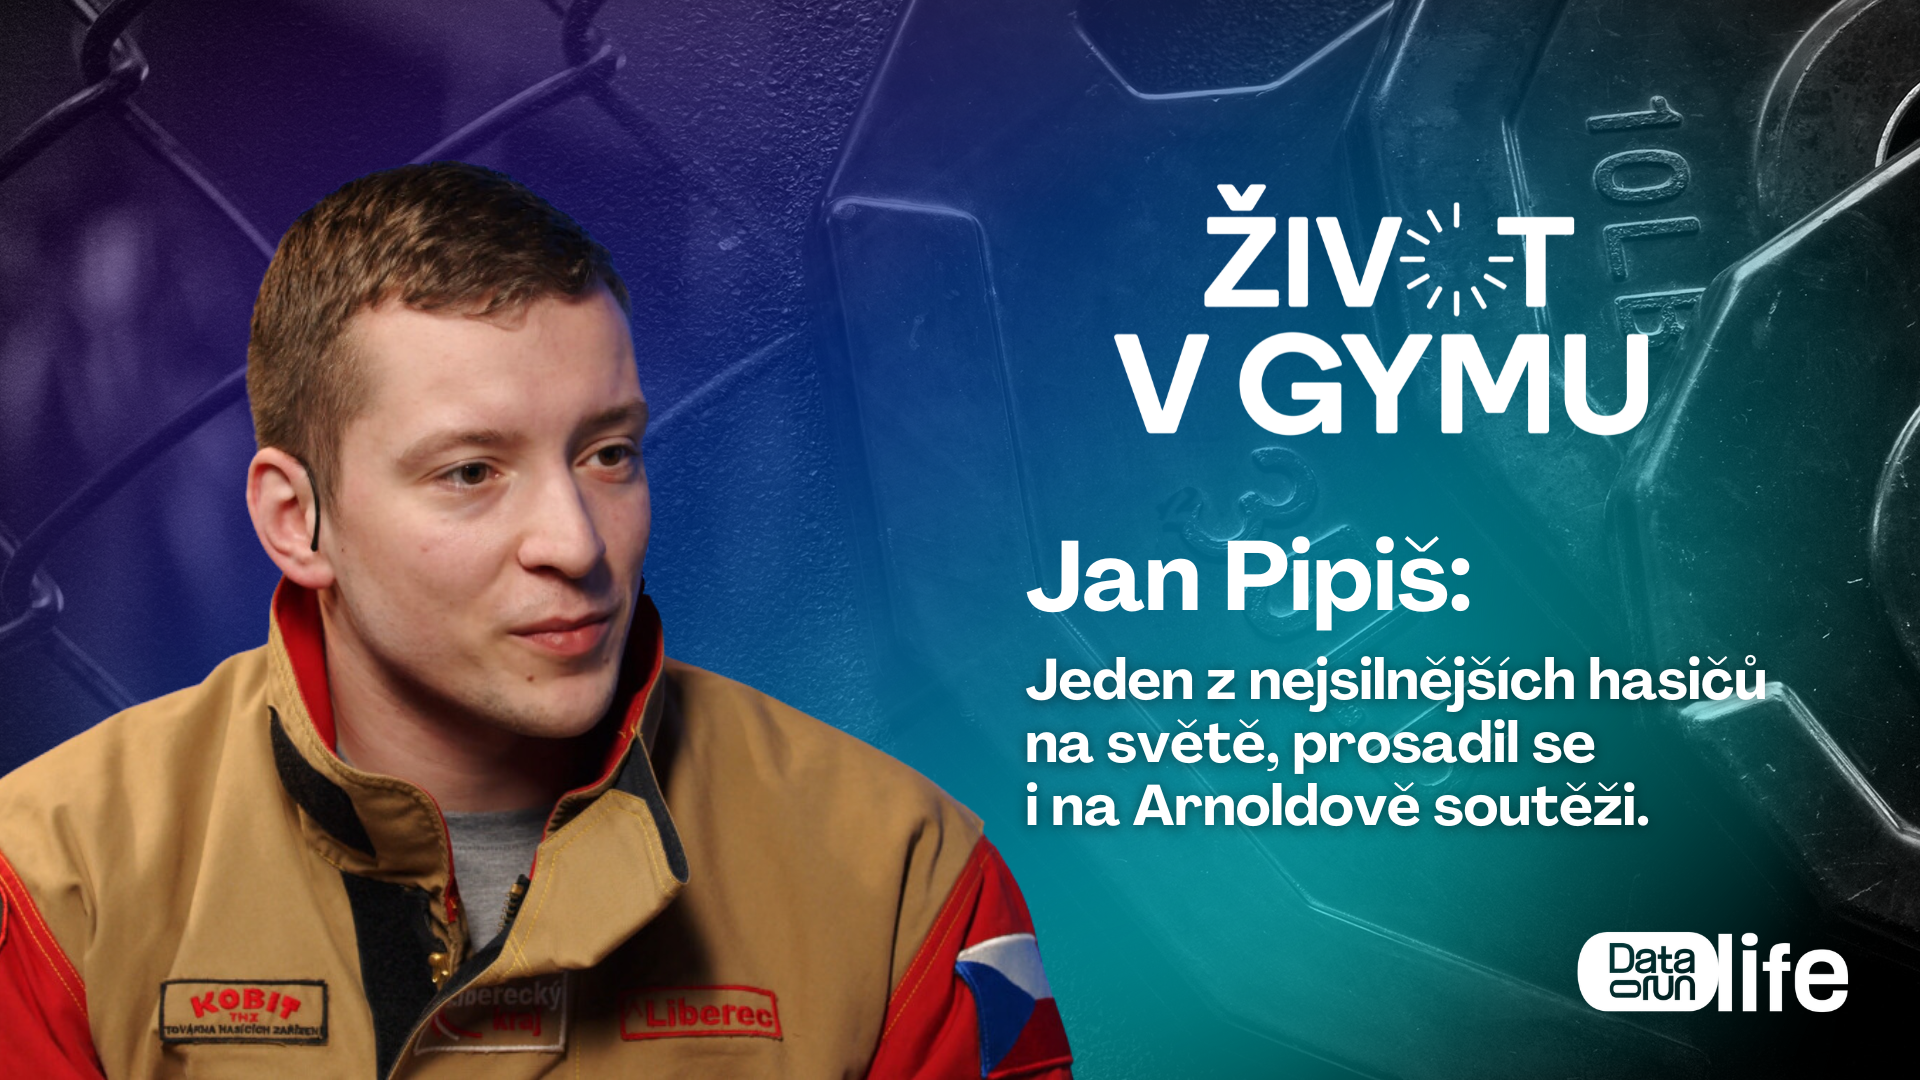 Preview of Jan Pipiš: Jeden z nejsilnějších hasičů na světě, prosadil se i na Arnoldově soutěži.